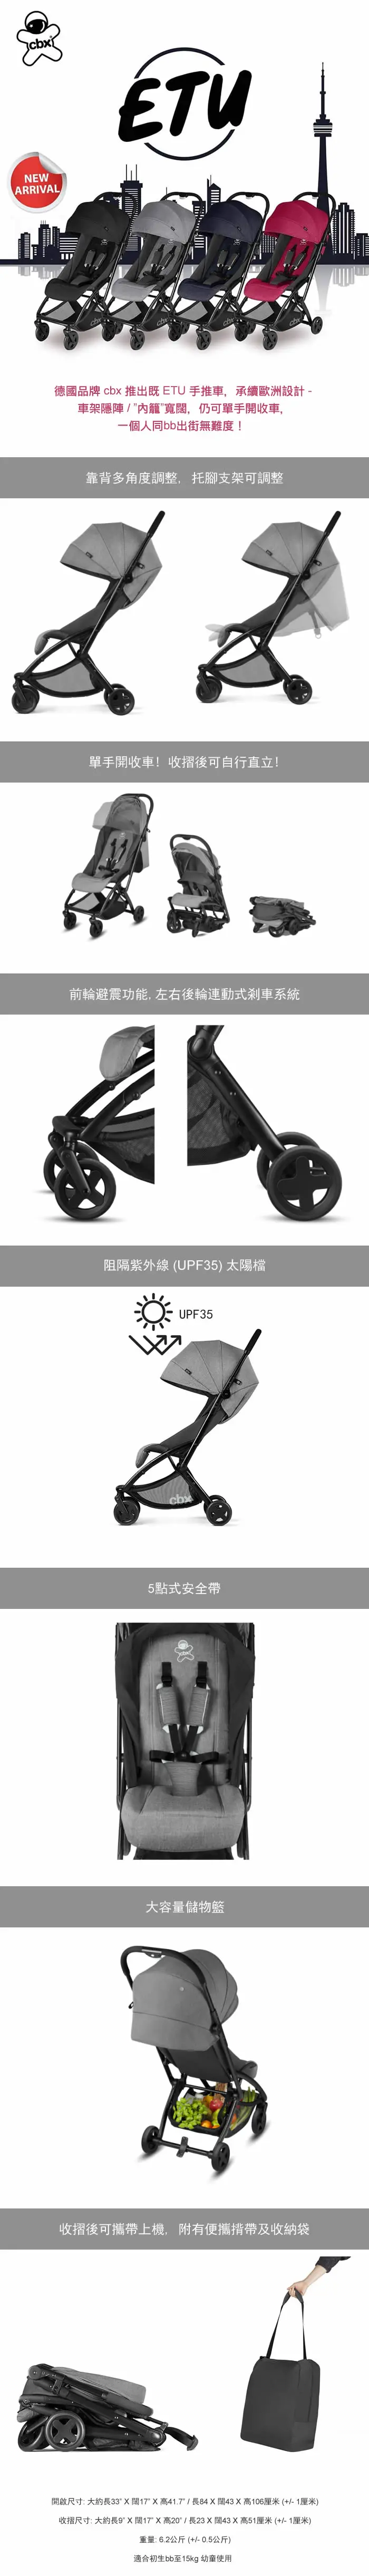 cbx Etu 輕便摺疊嬰兒手推車